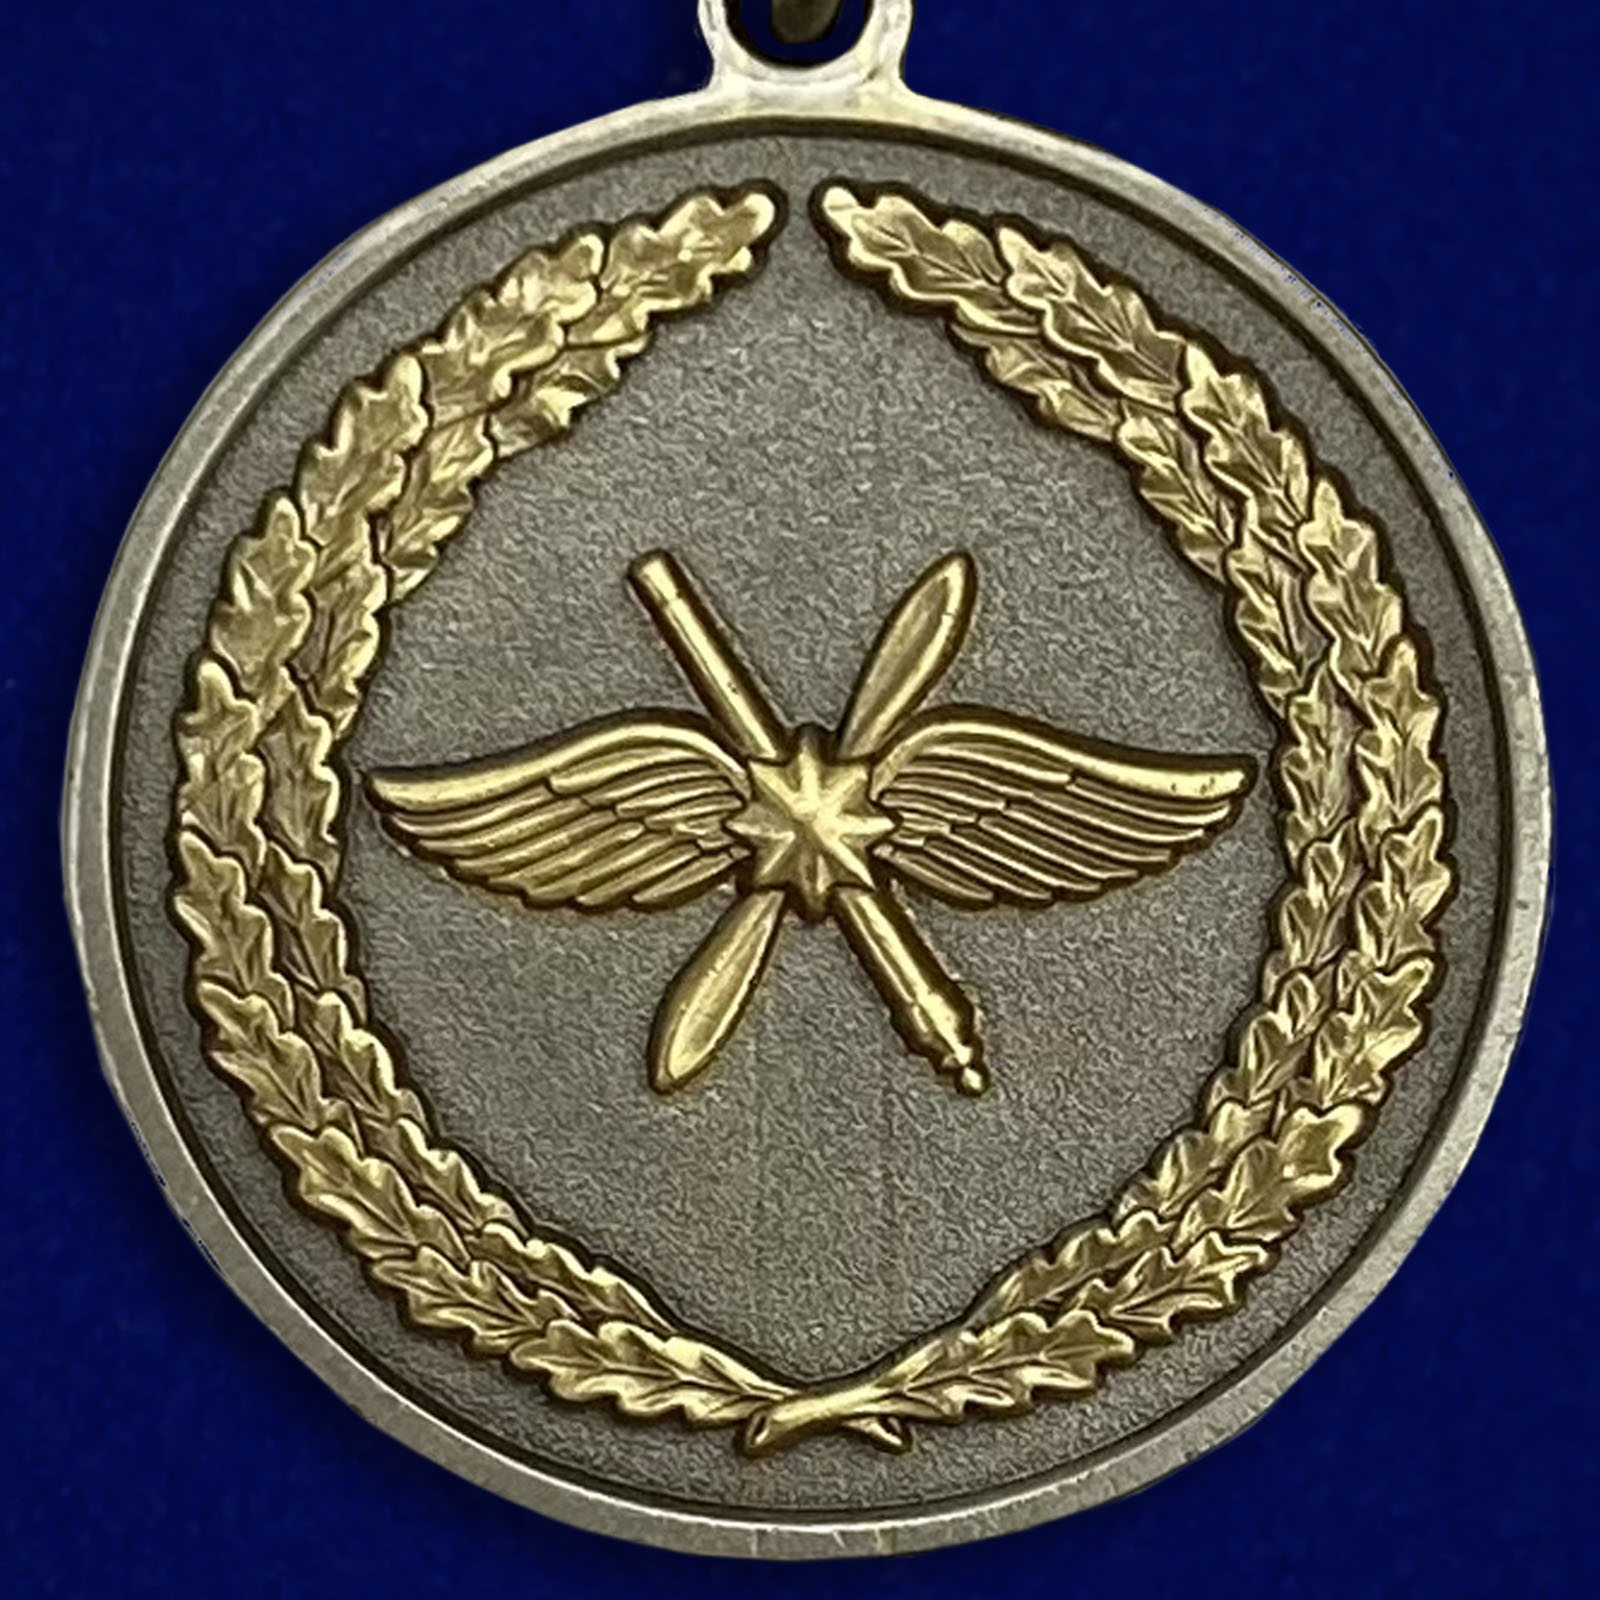 Описание медали "За участие в военной операции в Сирии" 